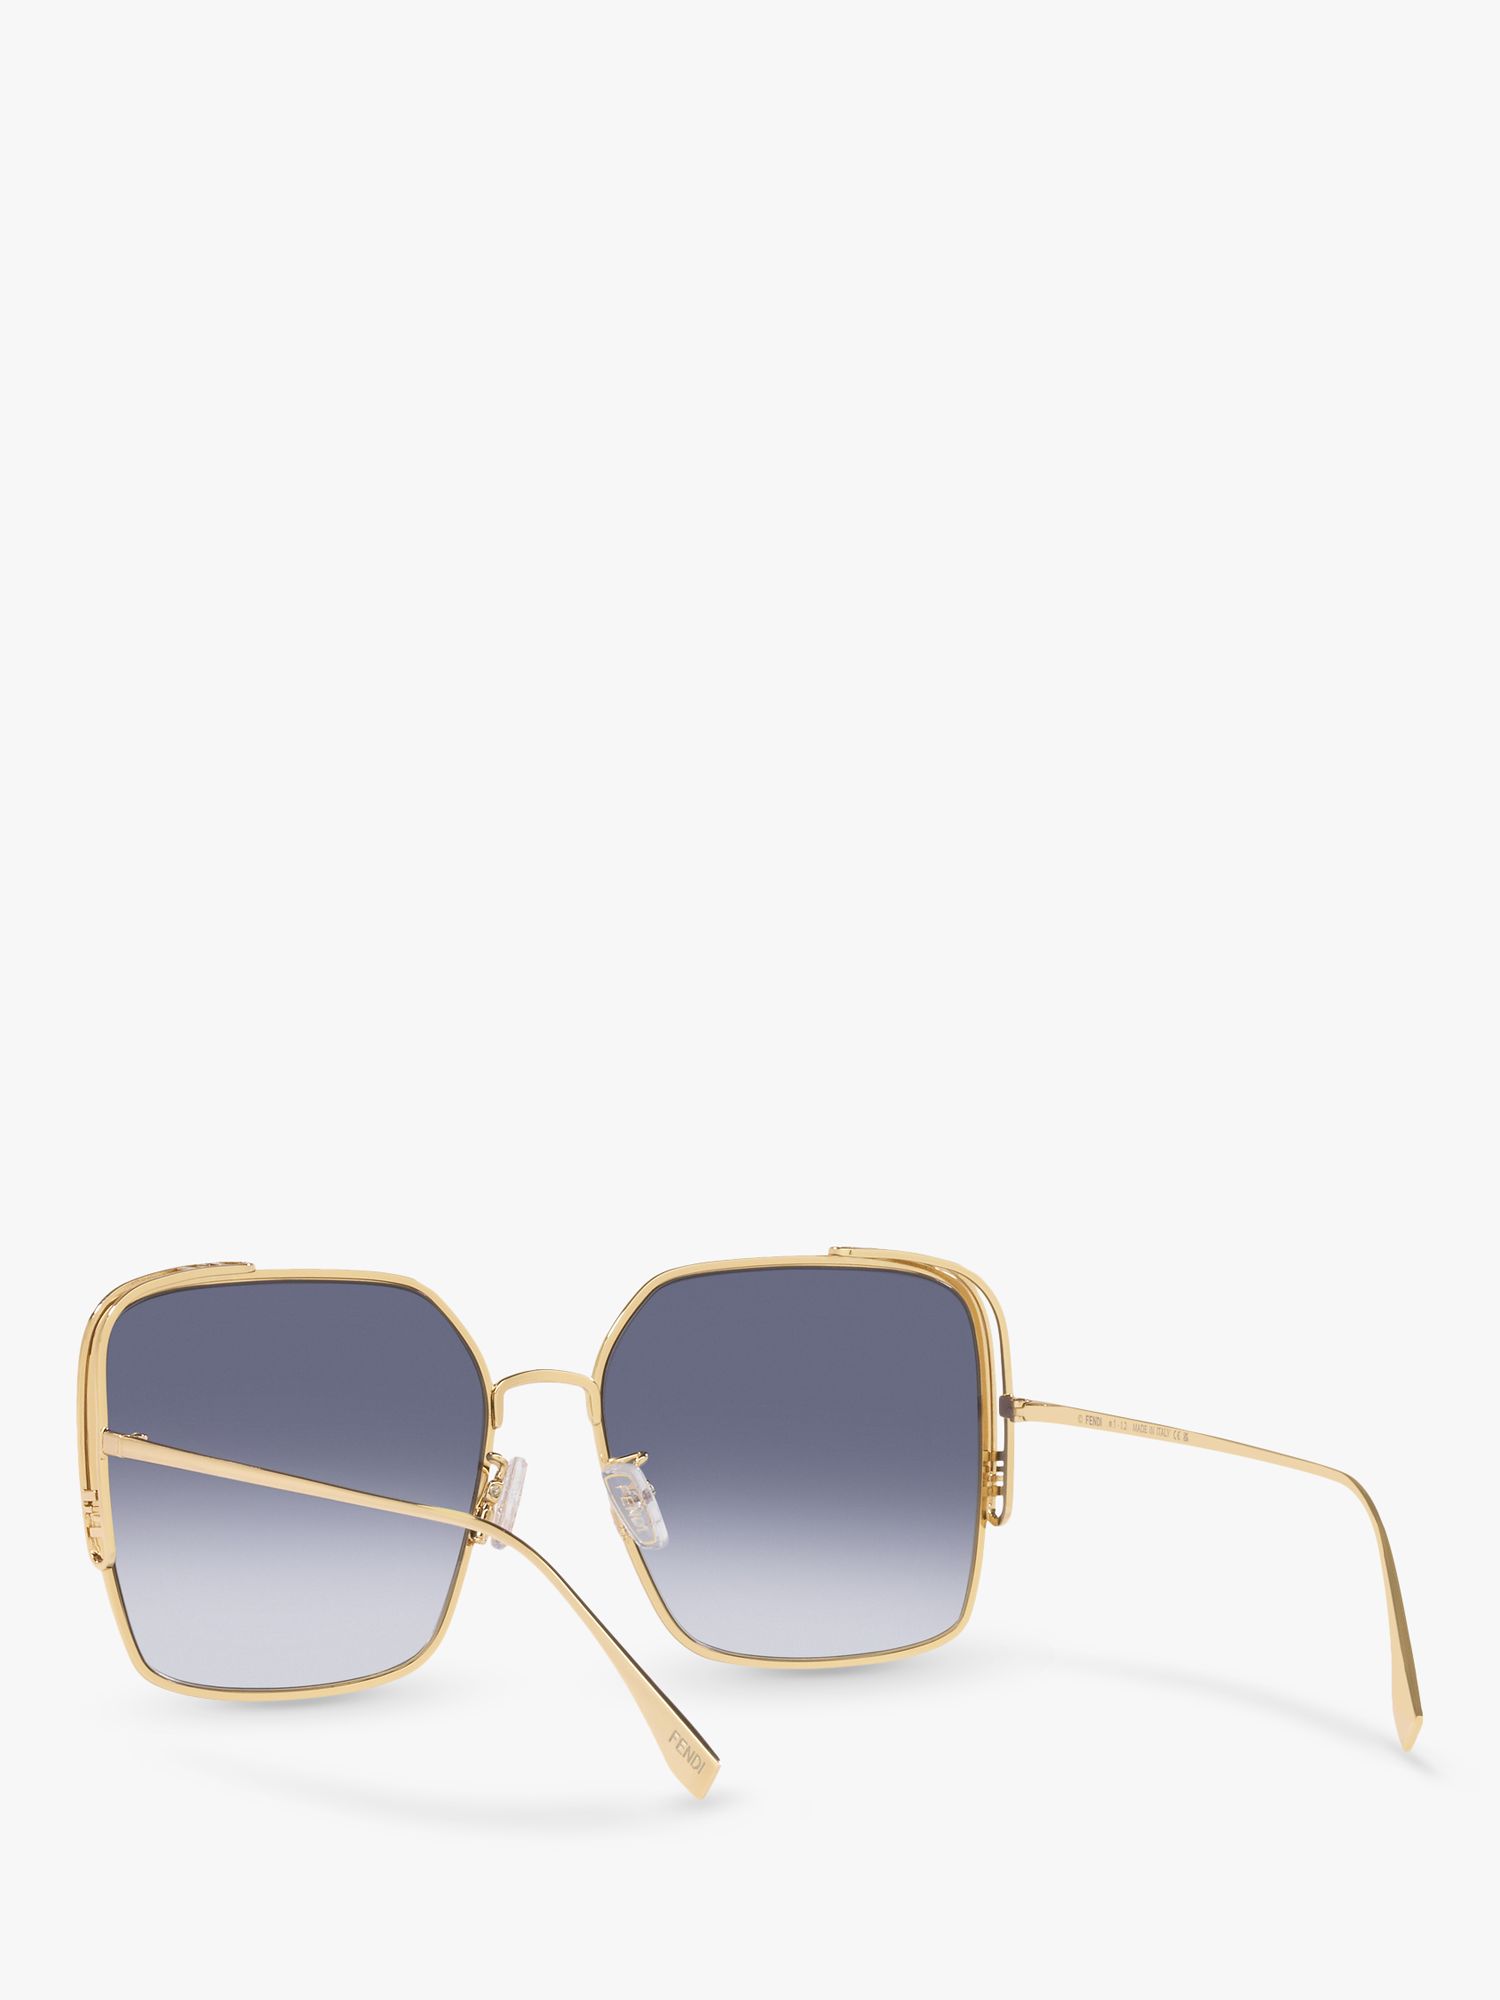 Sunglasses FENDI FE40015U 30E 61-17 Gold in stock, Price 250,00 €